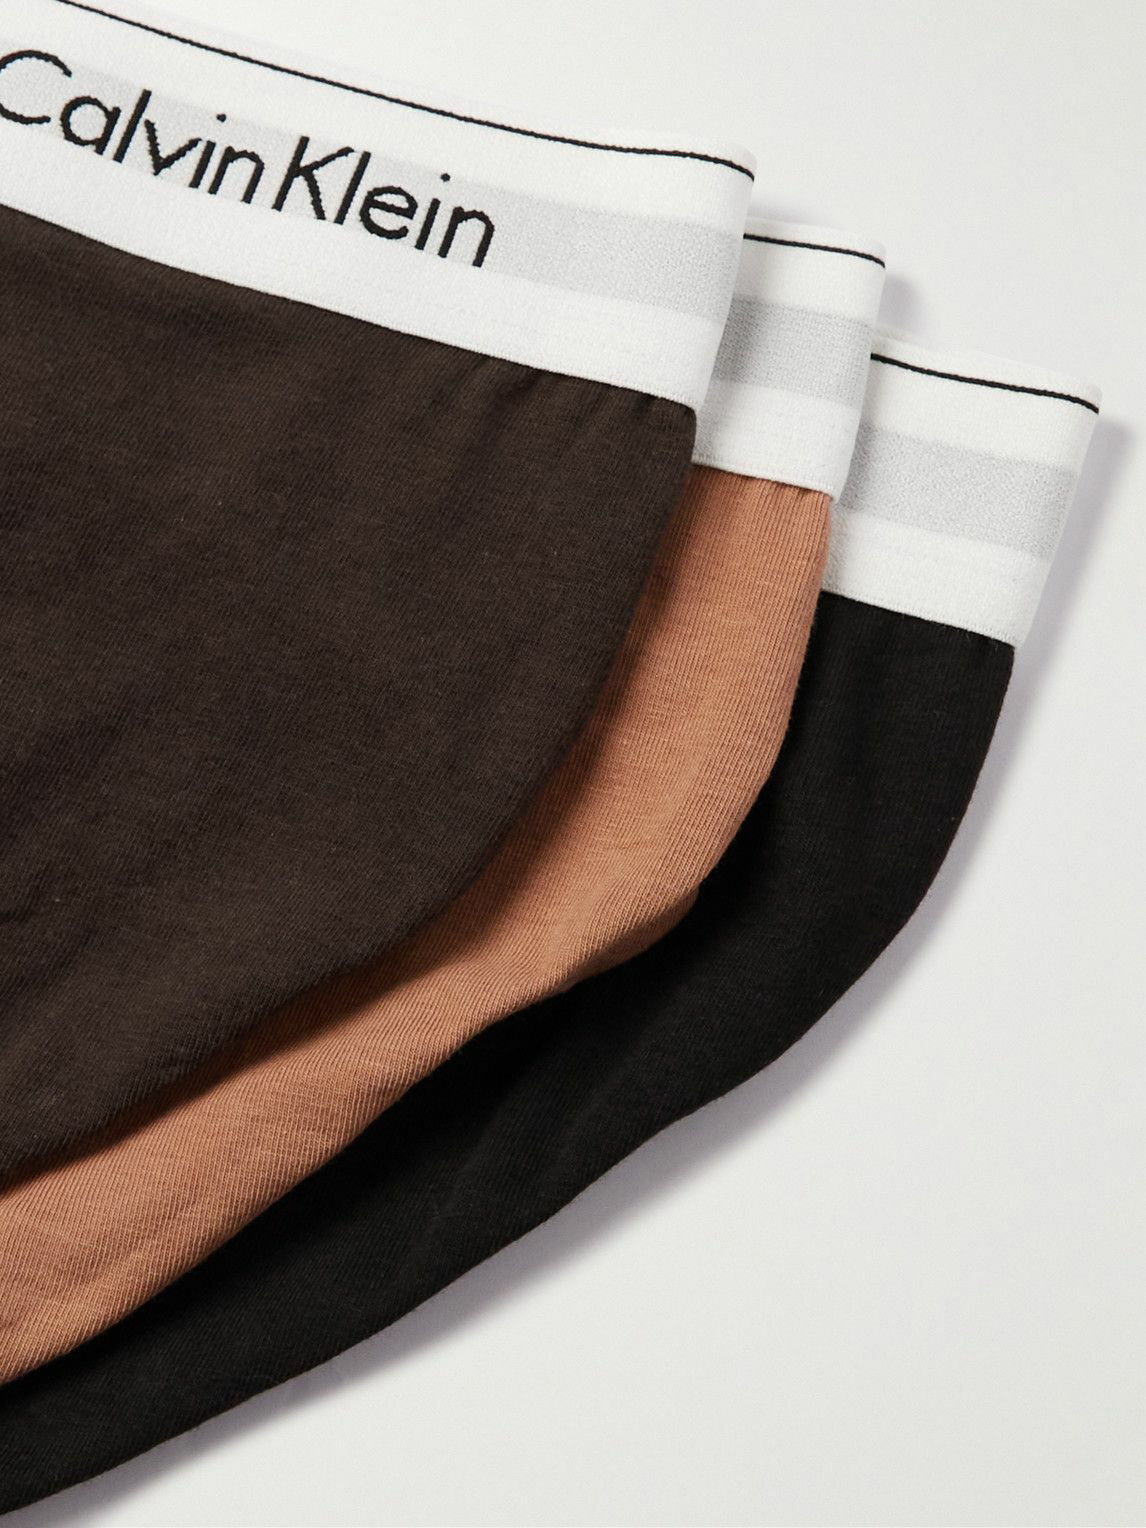 Calvin Klein Underwear Three-Pack Black Reconsidered Steel Boxer Briefs  Calvin Klein Underwear